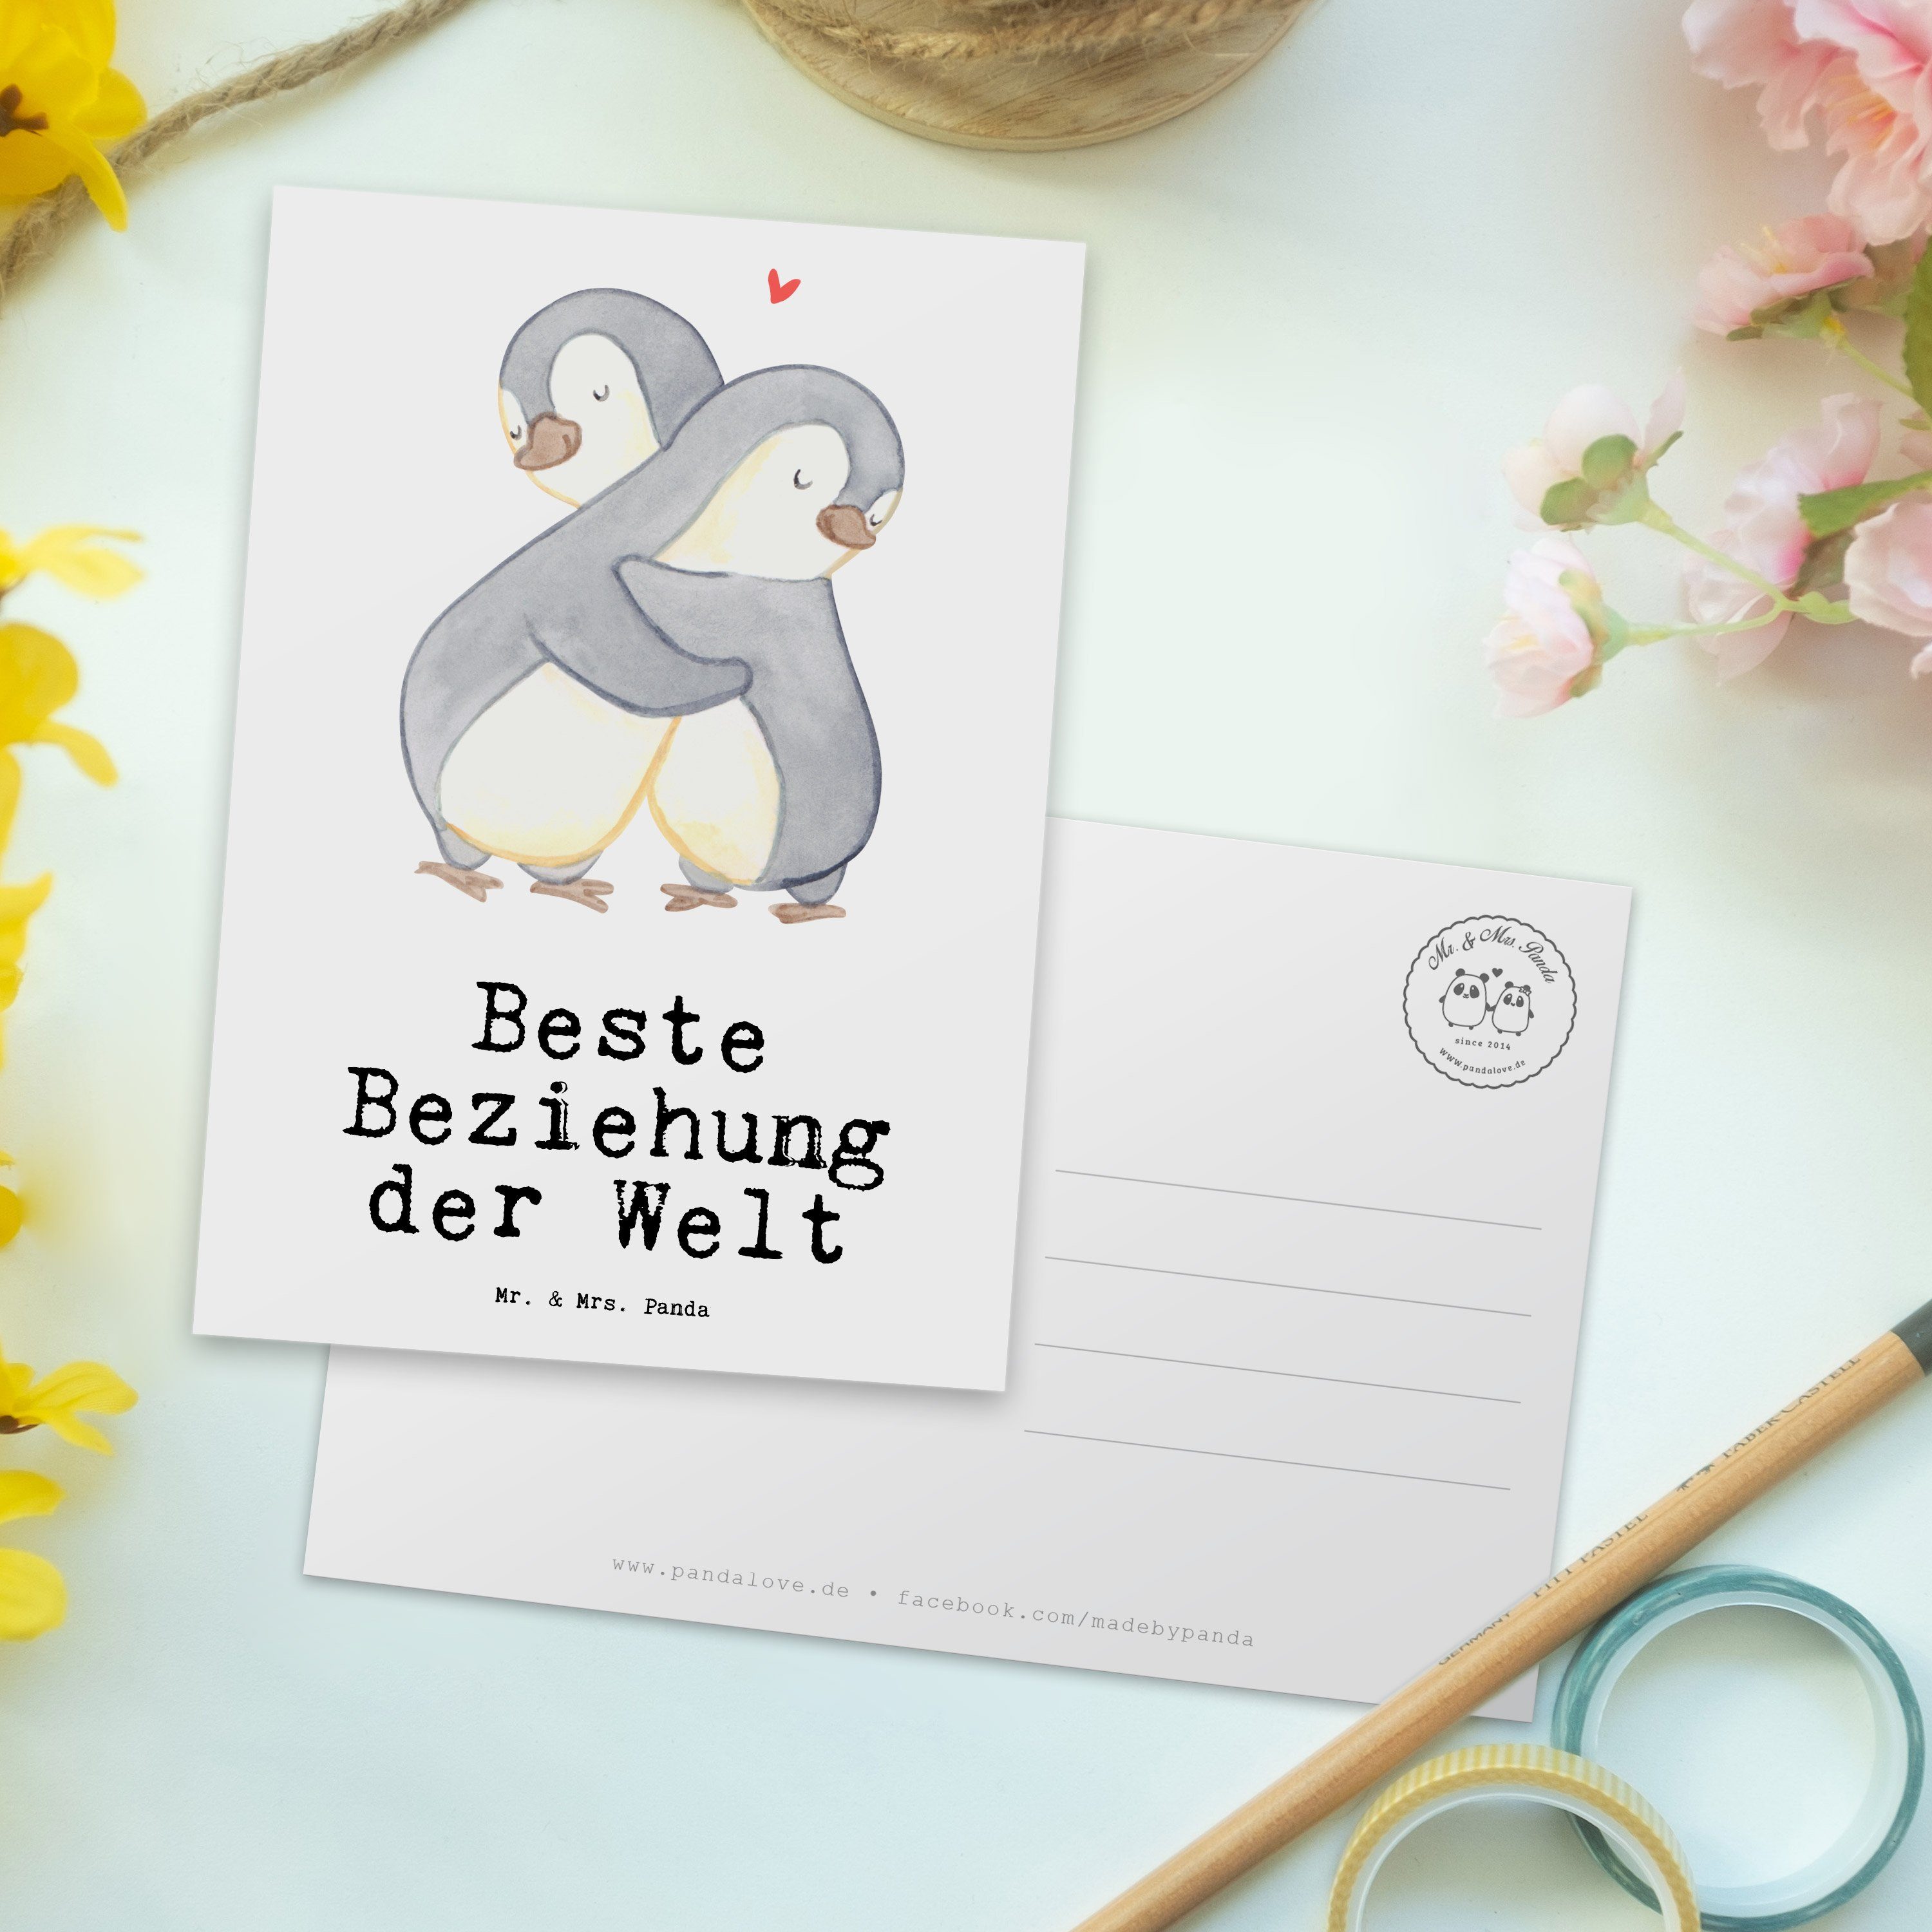 Weiß Geschenk, Postkarte & Welt Mr. Panda Mrs. Geburtst - Verlieb, Beziehung Beste - Pinguin der